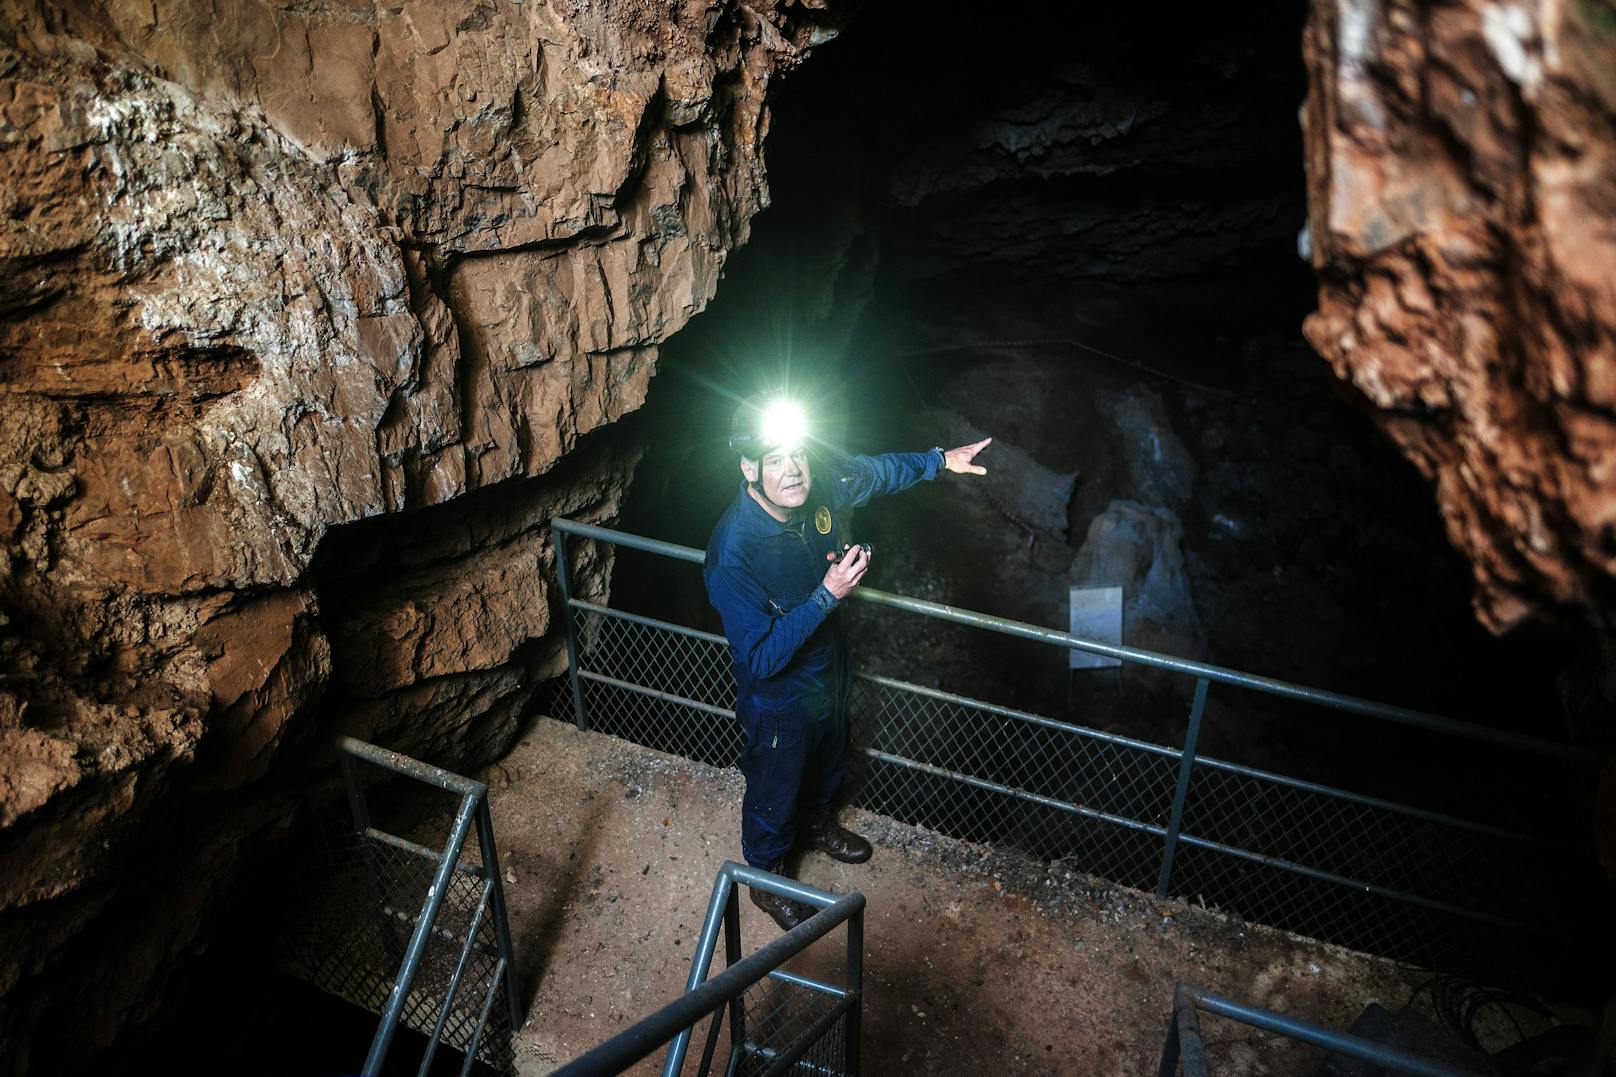 Lee Berger vor dem Haupteingang des Höhlensystems "Rising Star". Das Höhlensystem ist Teil der südafrikanischen "Wiege der Menschheit", einer UNESCO-Welterbestätte, die ein Gebiet umfasst, in dem Wissenschaftler Fossilien mehrerer alter menschlicher Vorfahrenarten gefunden haben – Überreste, die dazu beitragen, die Geschichte der menschlichen Evolution zu entschlüsseln.